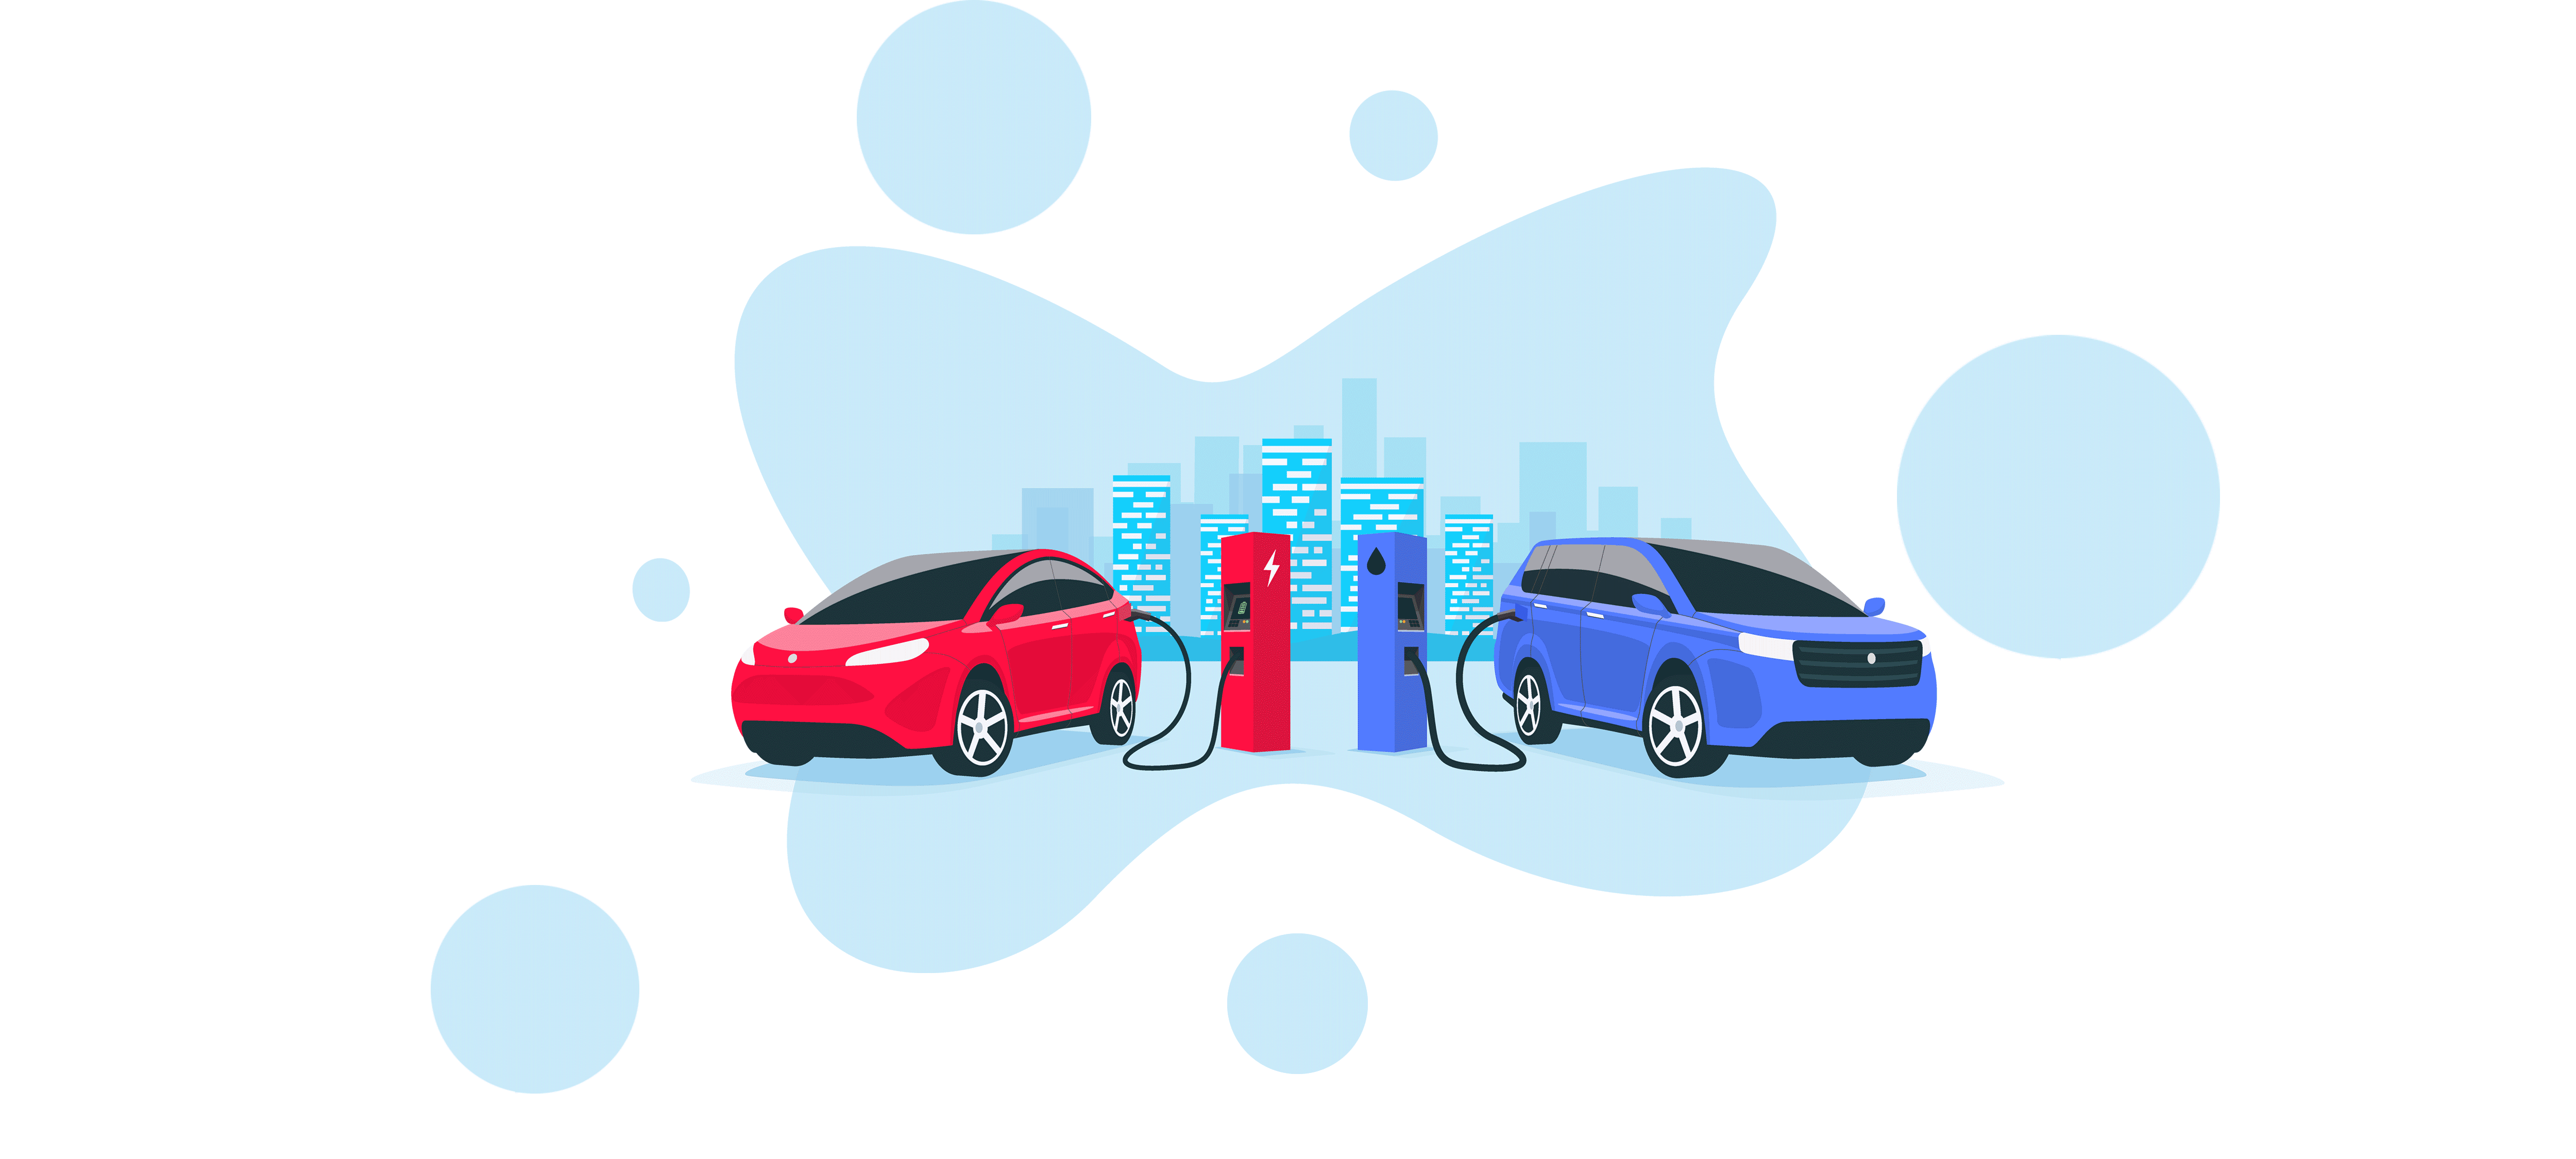 Ô tô điện có thực sự tốt cho môi trường hơn xe chạy xăng không?